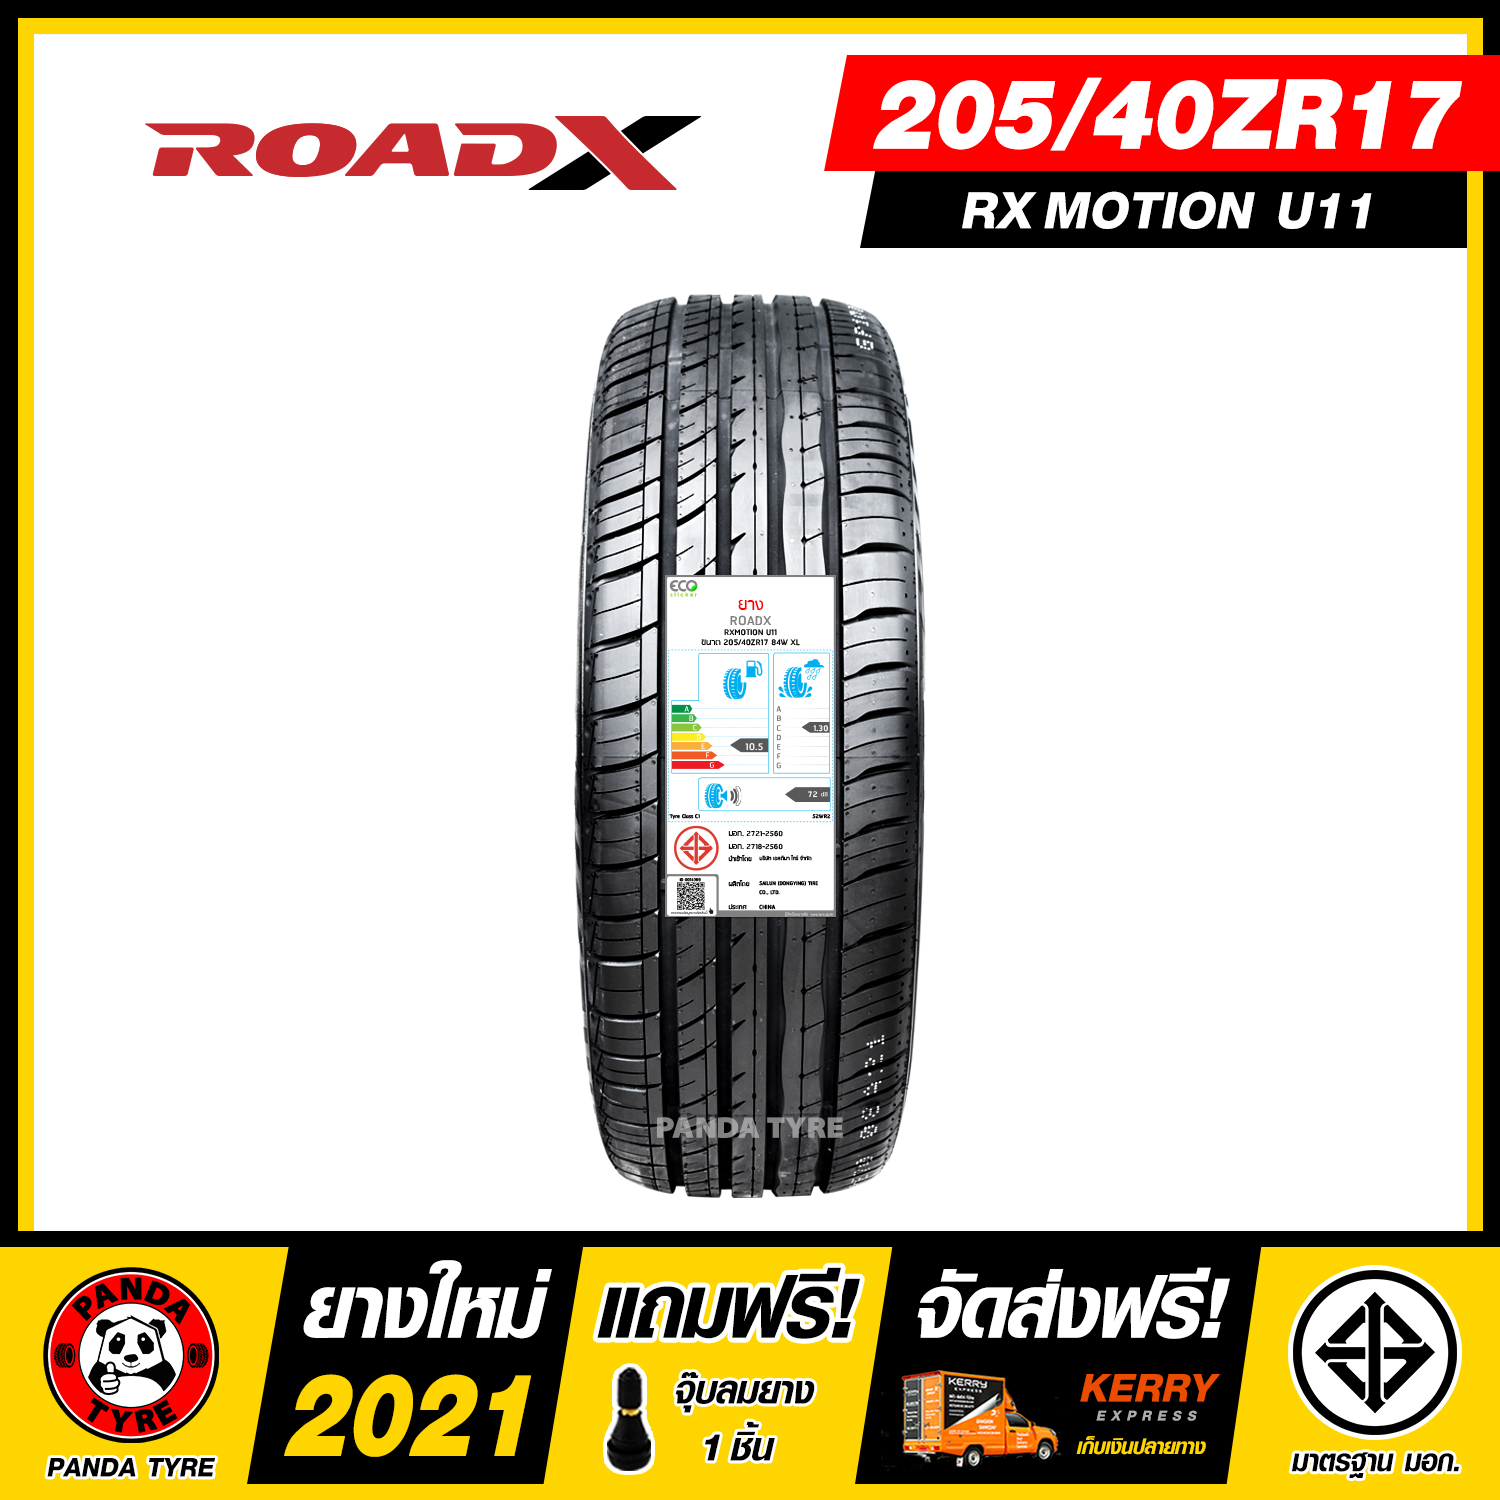 ROADX 205/40R17 ยางรถยนต์ขอบ17 รุ่น RXMOTION U11 - 1 เส้น (ยางใหม่ผลิตปี 2021)